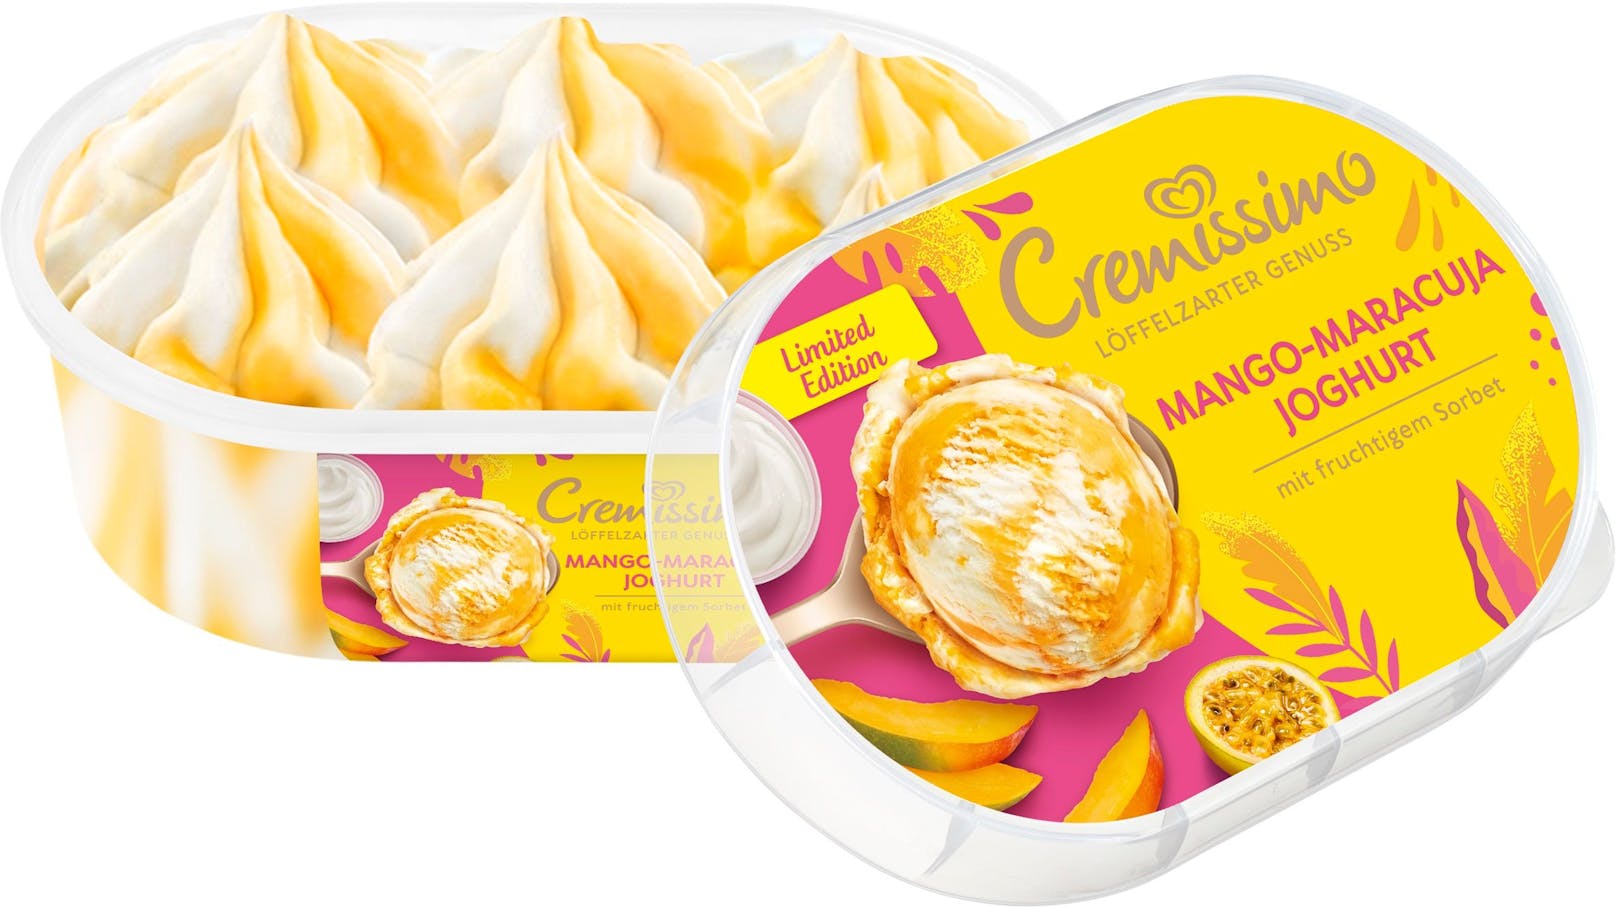 Neues Cremissimo-Eis "Mango-Maracuja-Joghurt"